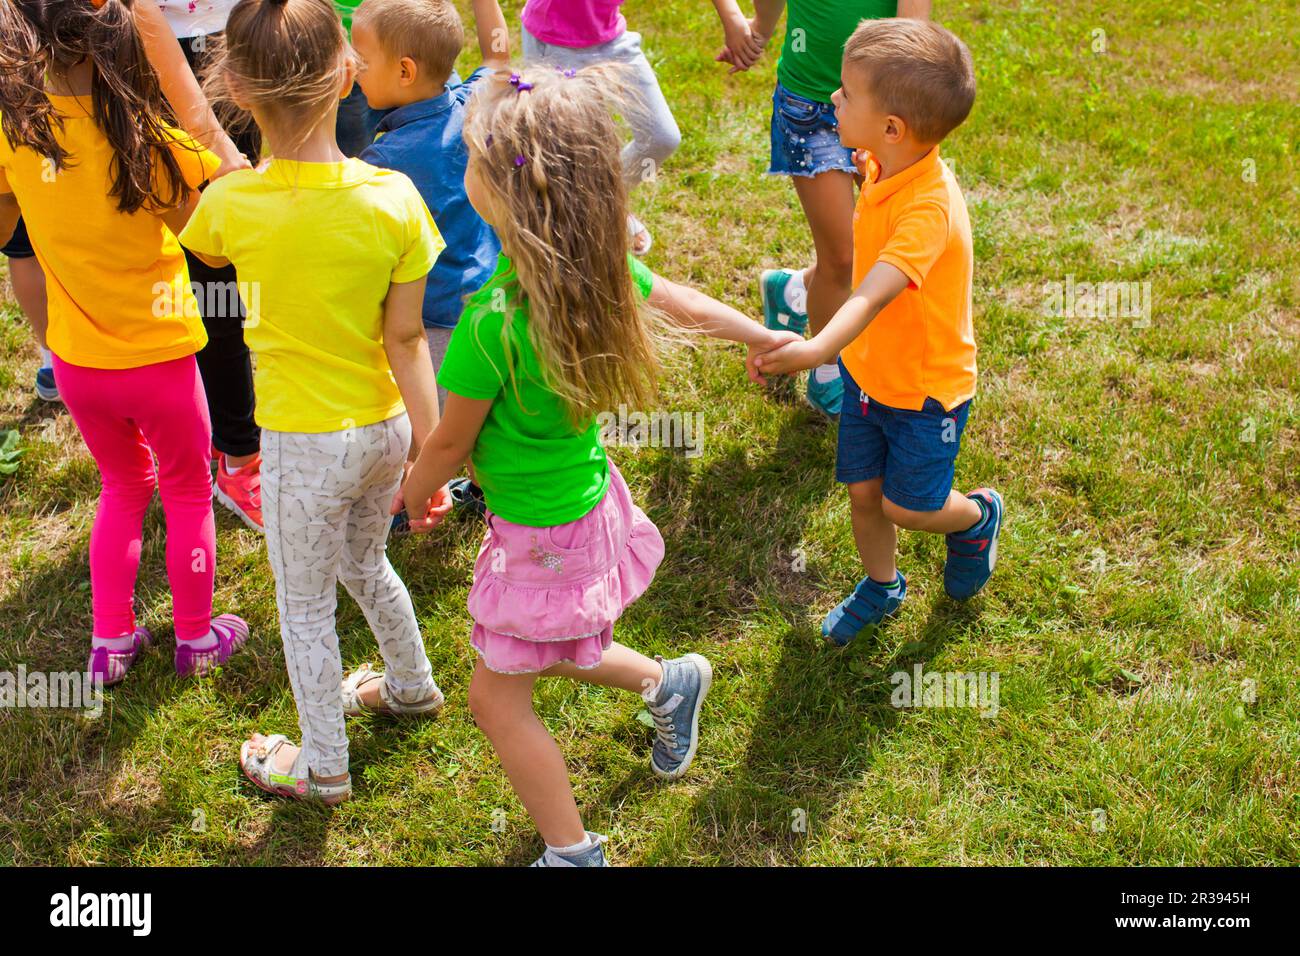 Aktivitäten für Kinder unterschiedlichen Alters auf grünem Rasen Stockfoto